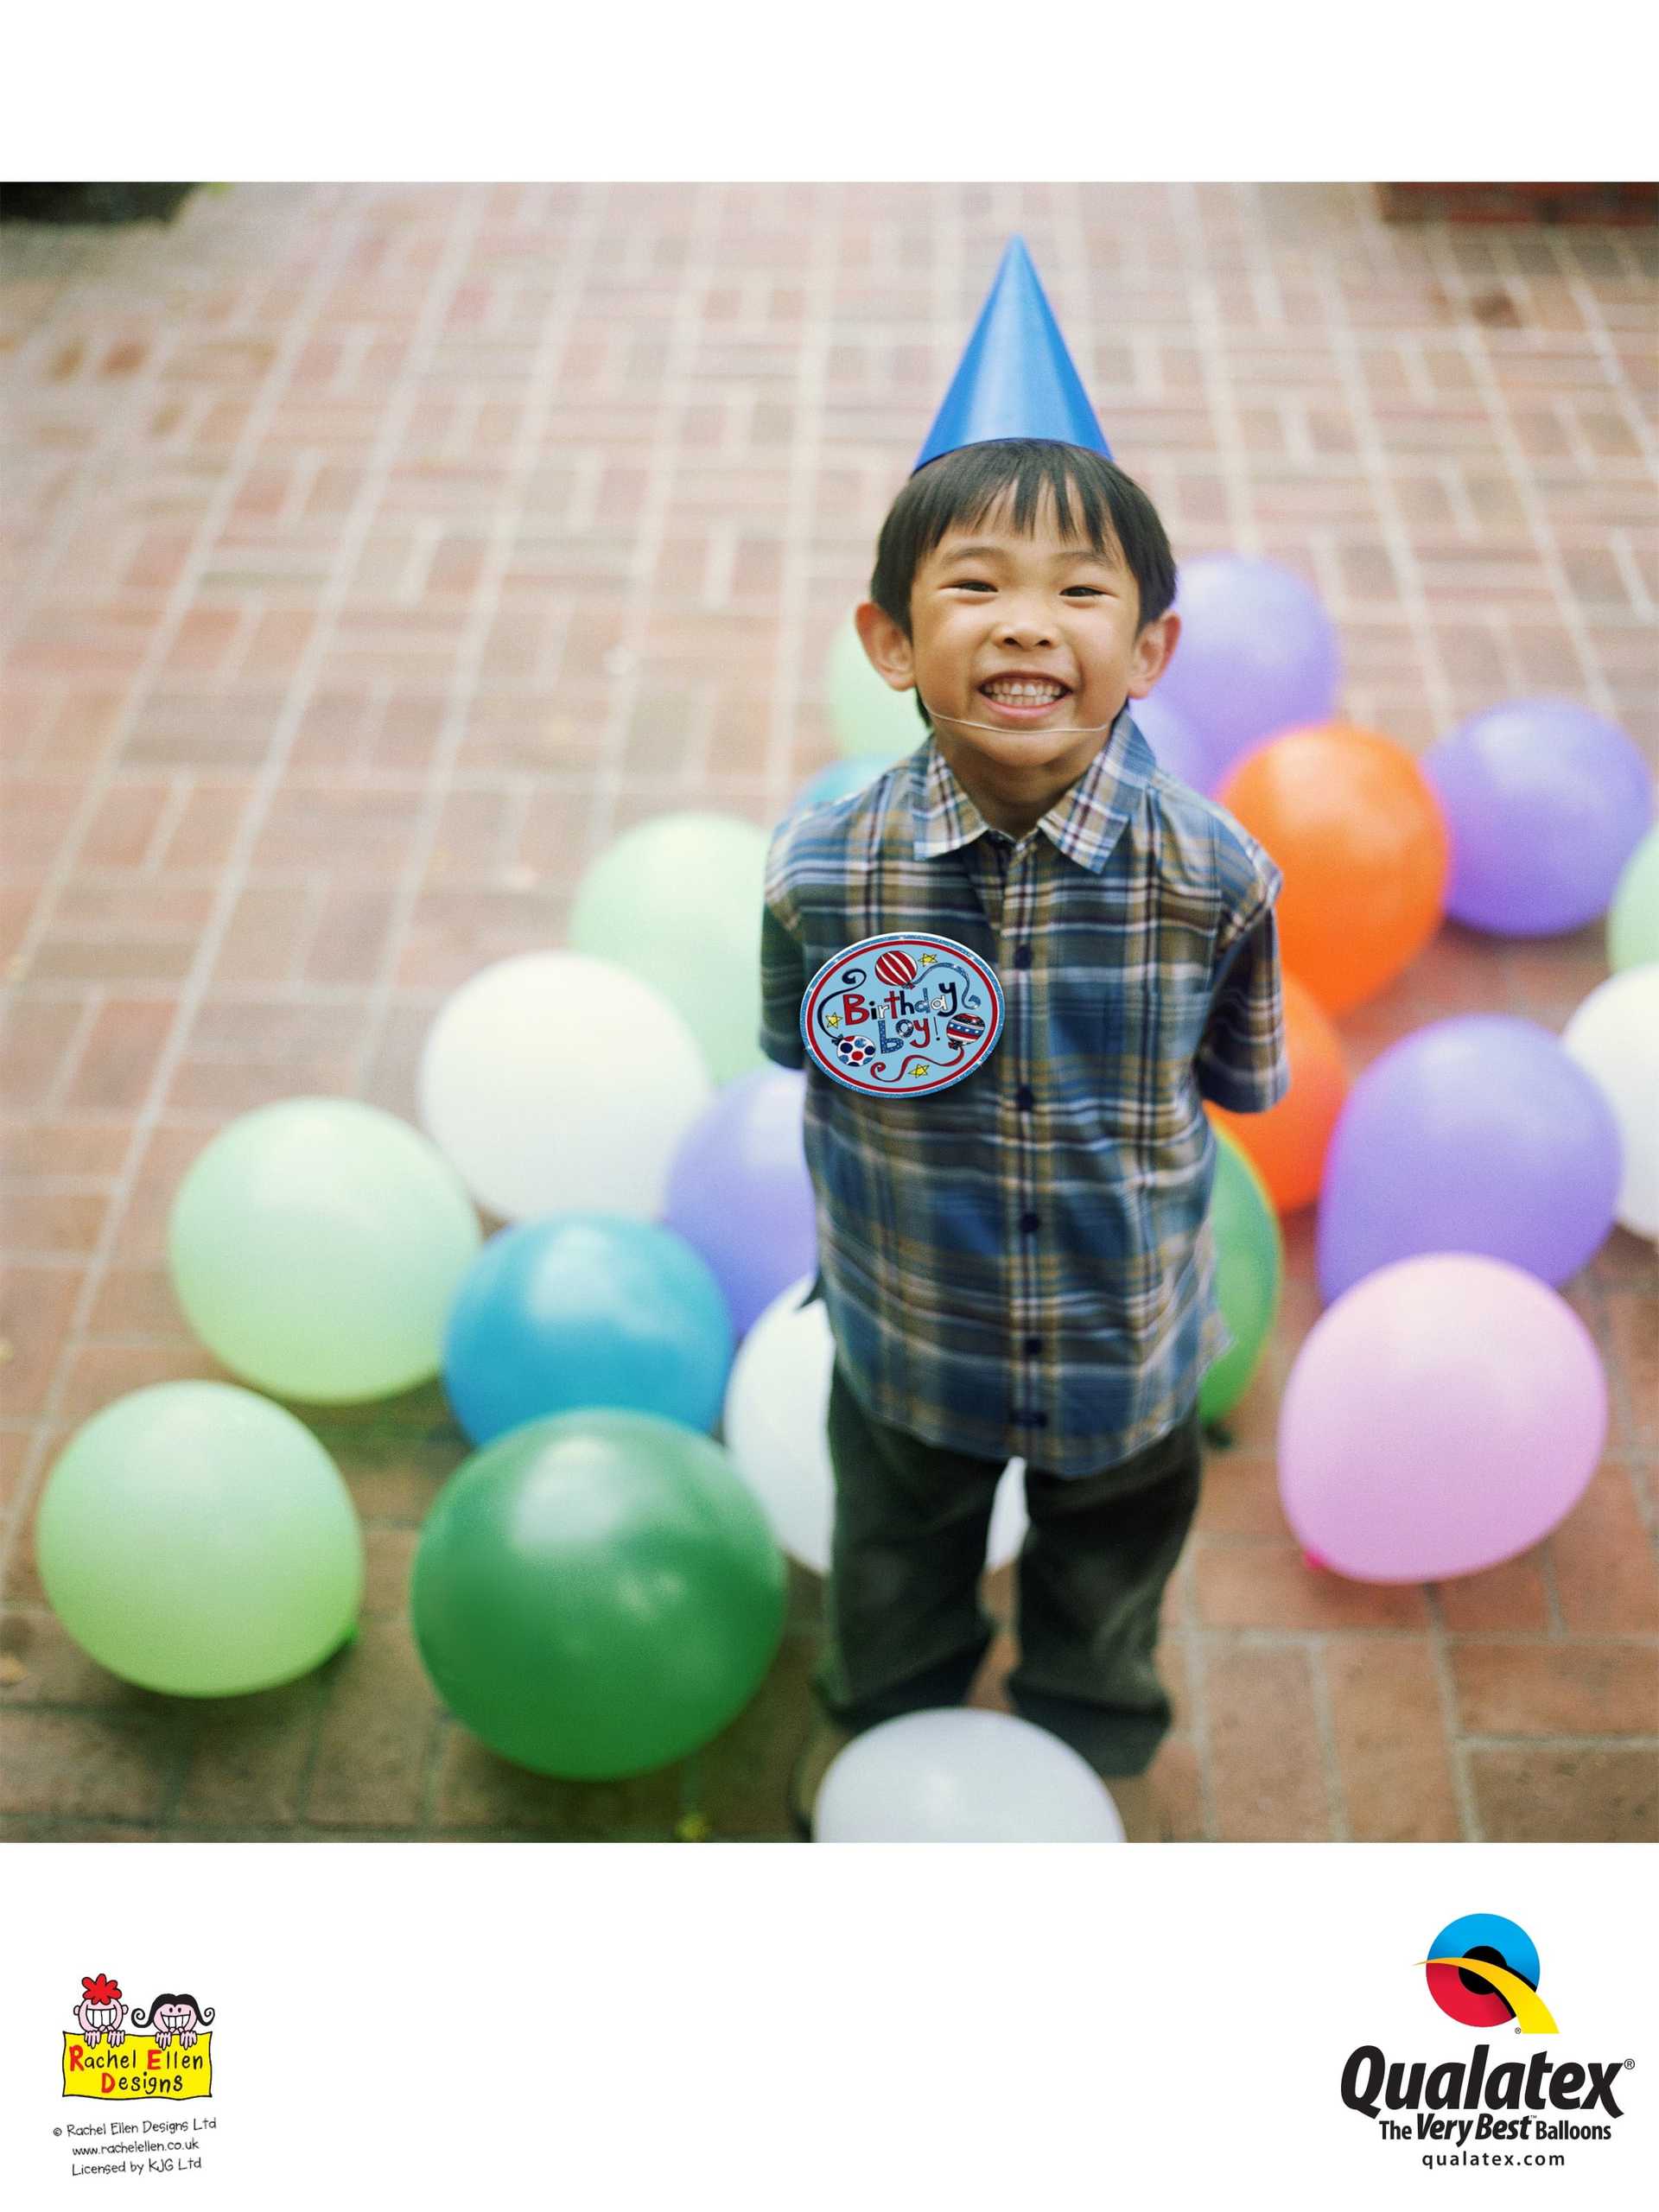 Ein kleiner Junge steht neben einigen Ballons.